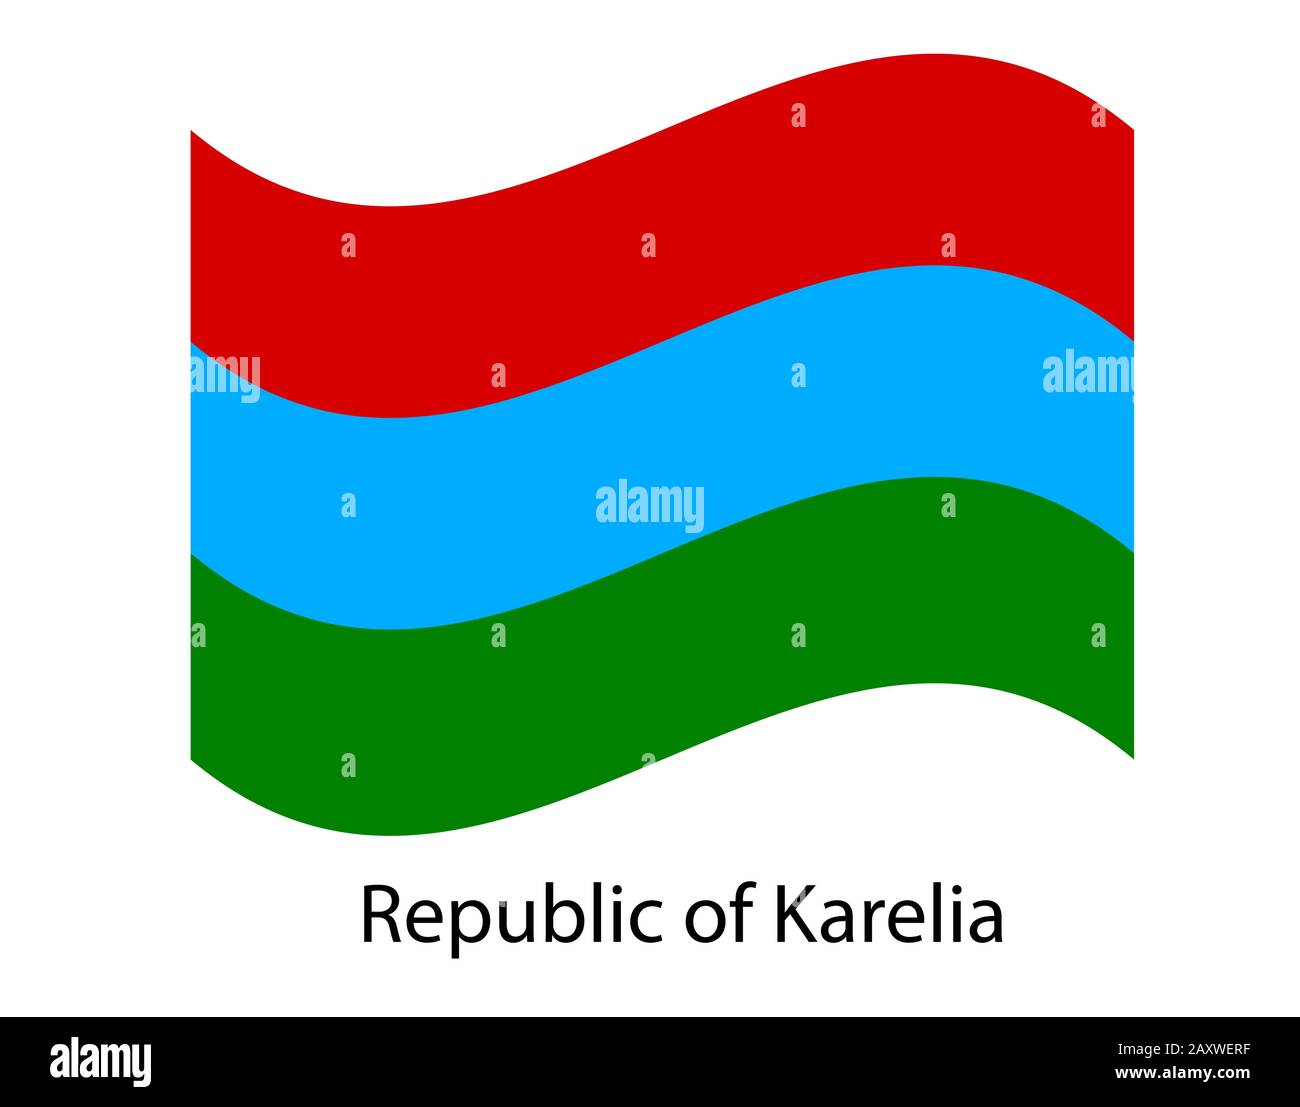 Bandiera della Repubblica di Carelia, isolata su sfondo bianco. Illustrazione della bandiera russa oblast. Federazione russa. Illustrazione Vettoriale